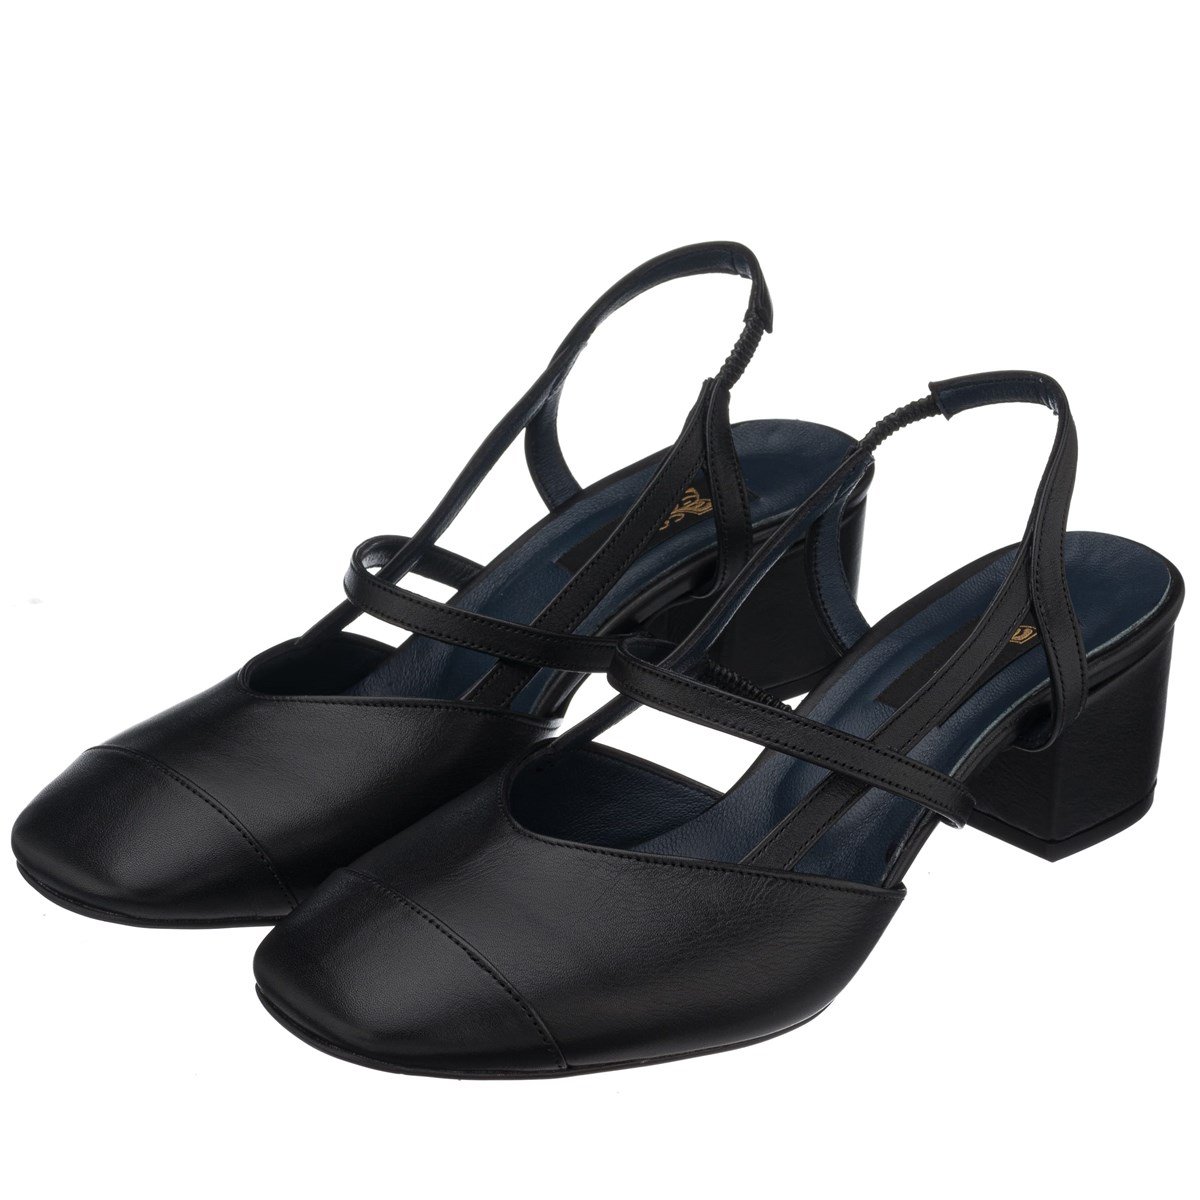 LTF00141 Siyah Kısa Topuk terlik sandalet jurdan rahat geniş kalıp özel  seri büyük numara topuklu ayakkabı